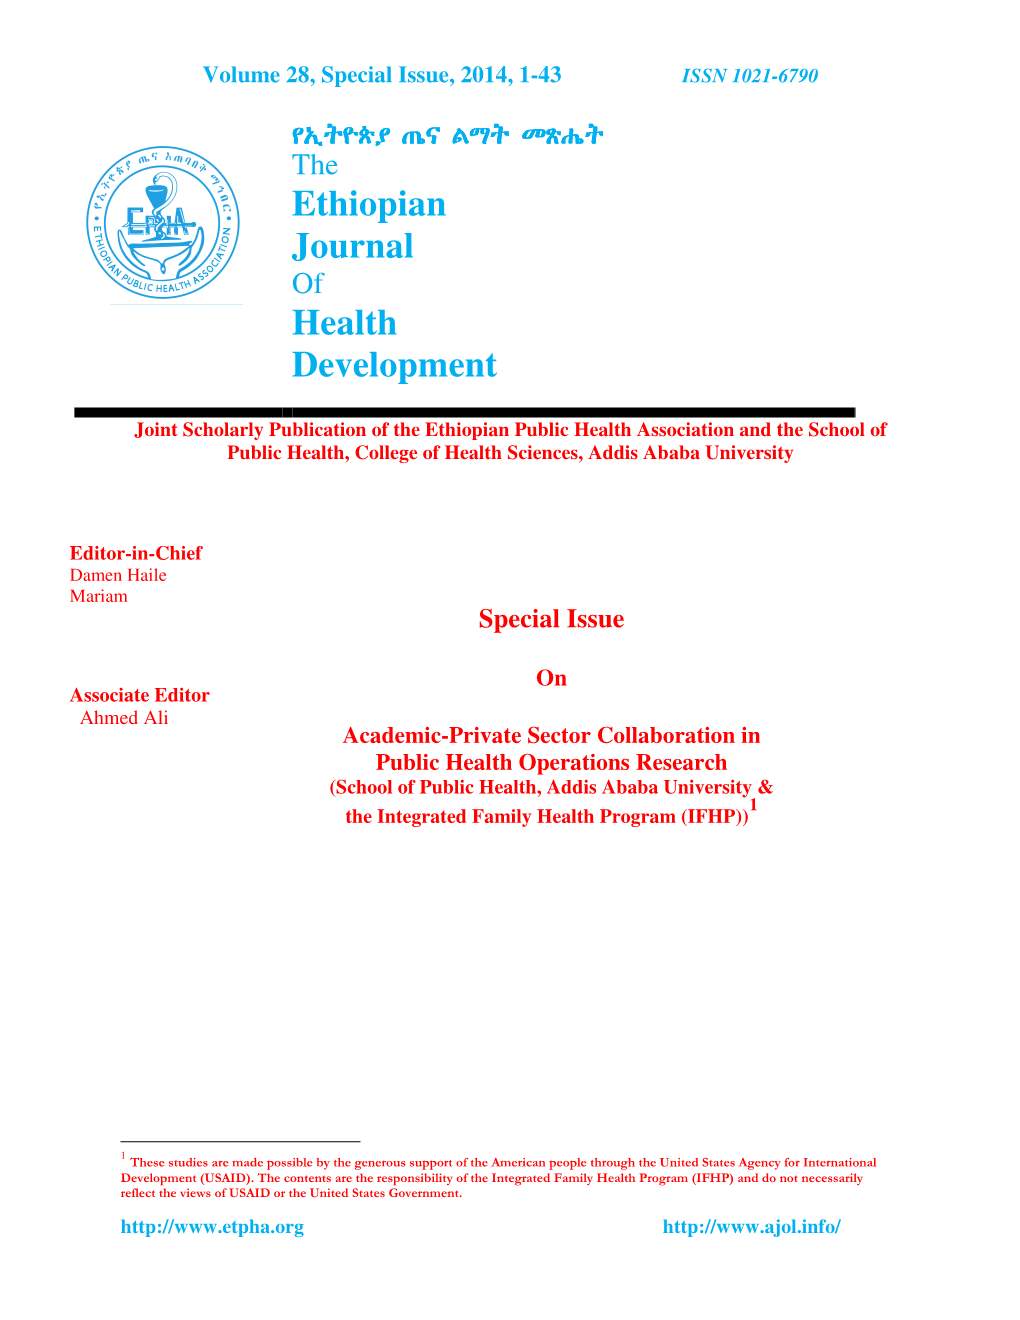 Ethiopian Journal Health Development